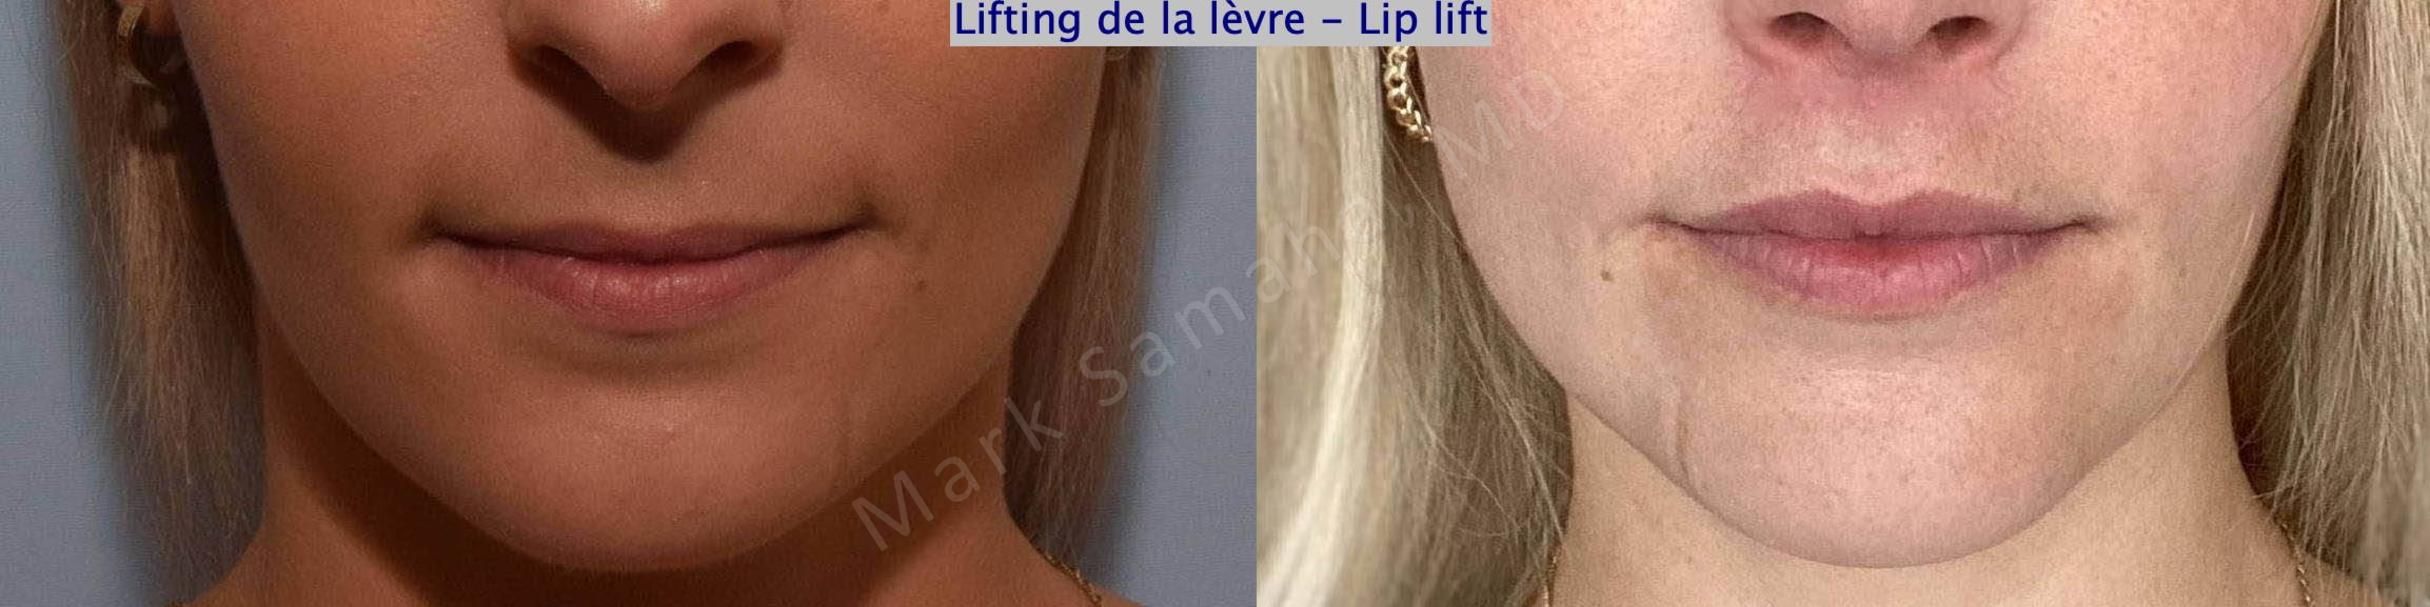 Before & After Lifting de la lèvre supérieure / Lip Lift  Case 177 Front View in Mount Royal, QC